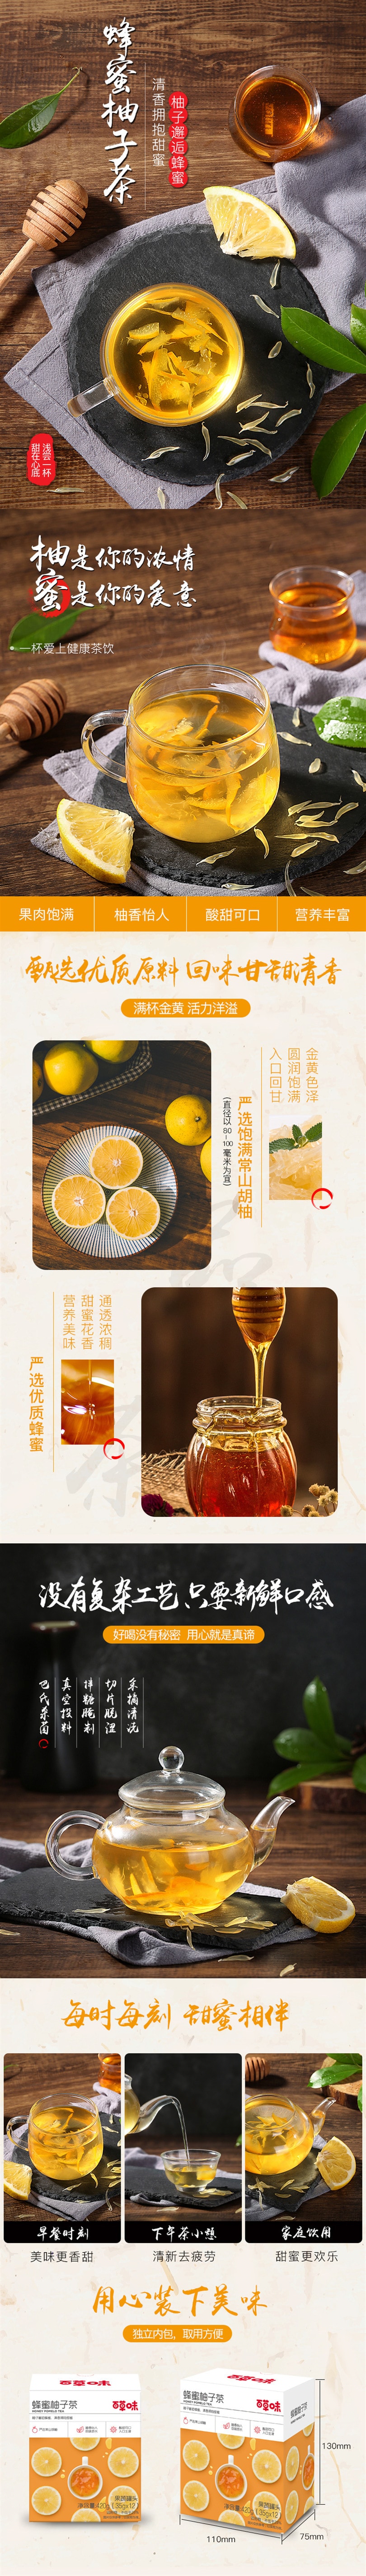 BE&CHEEERY Honey pomelo tea 420g